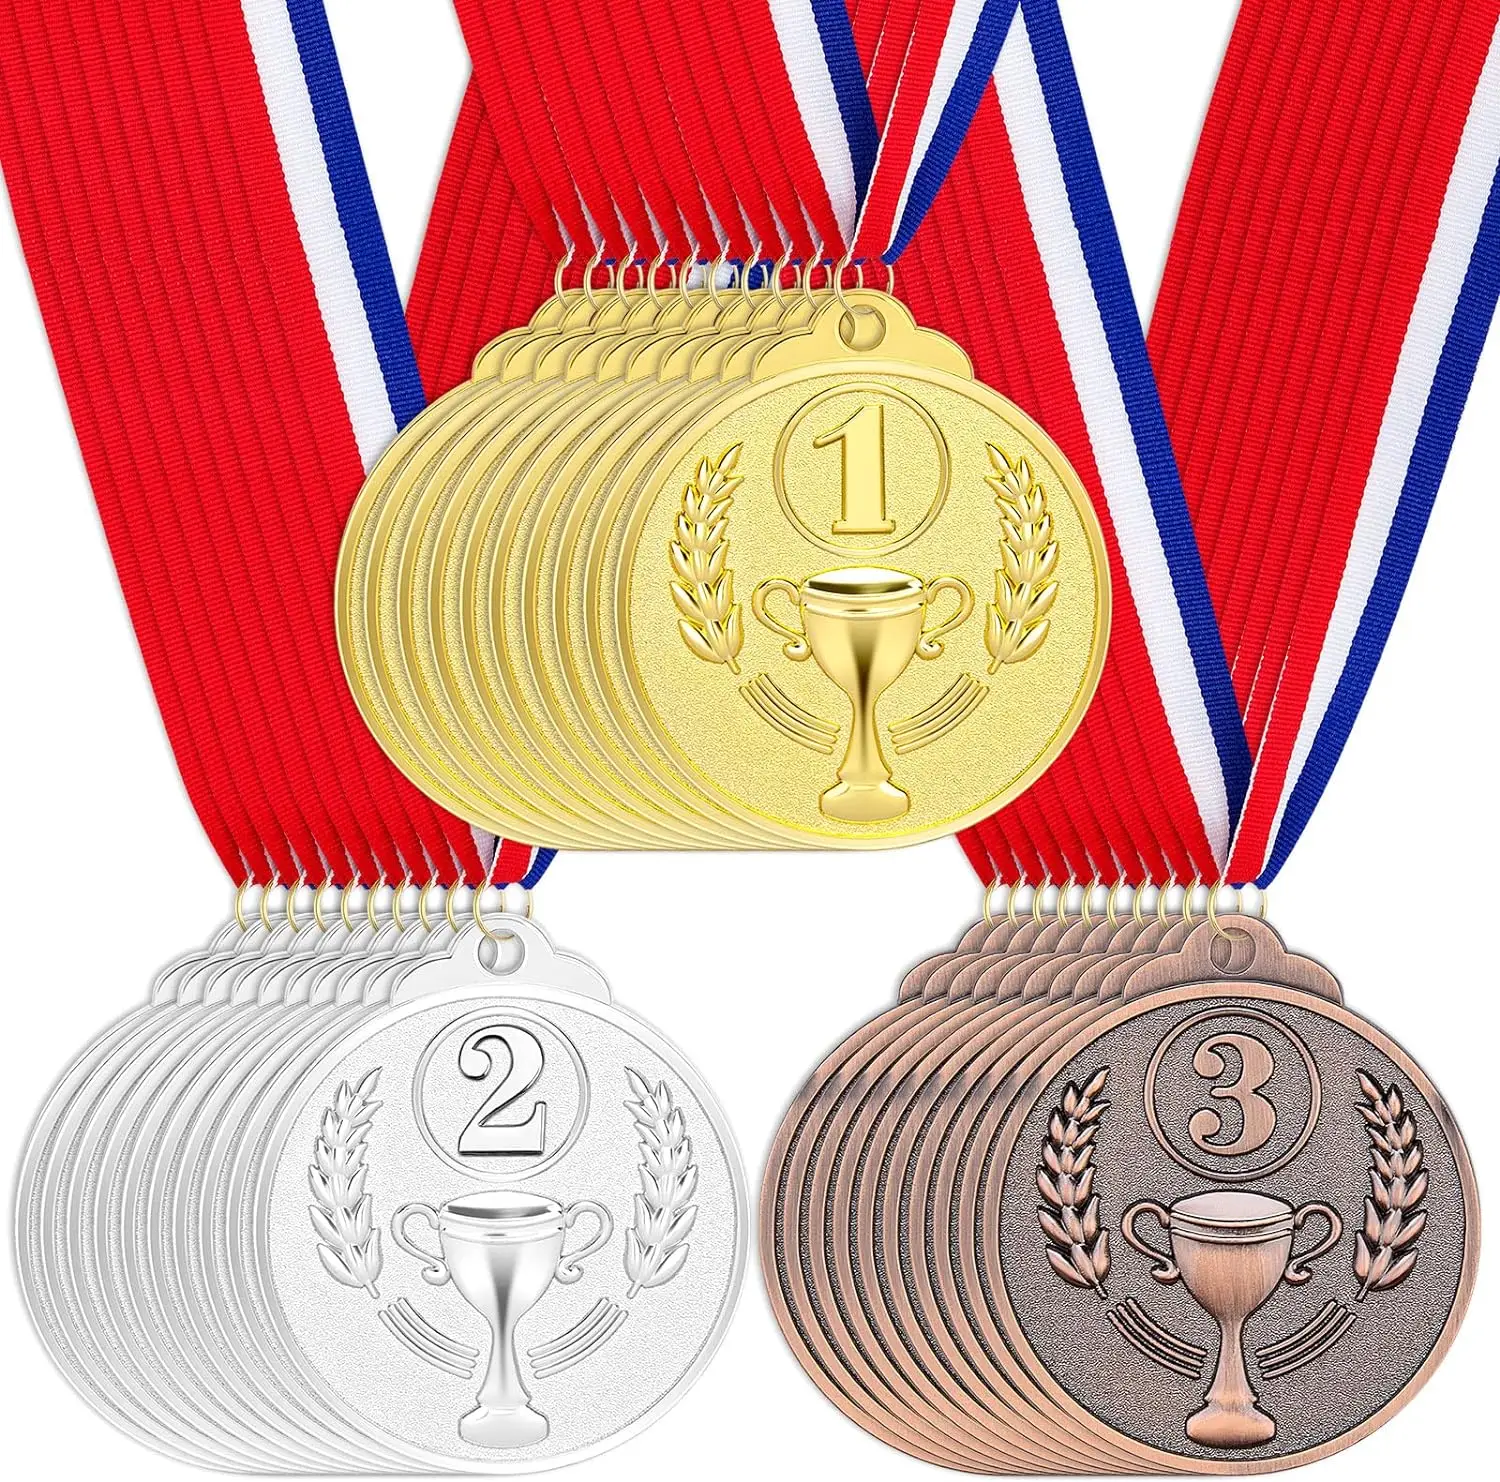 Vencedor Prémio Apresenta para Competição, Vencedor Prémio Escolar, Prata Dourada e Bronze, 1 ° e 2 °, Desporto, 5PCs